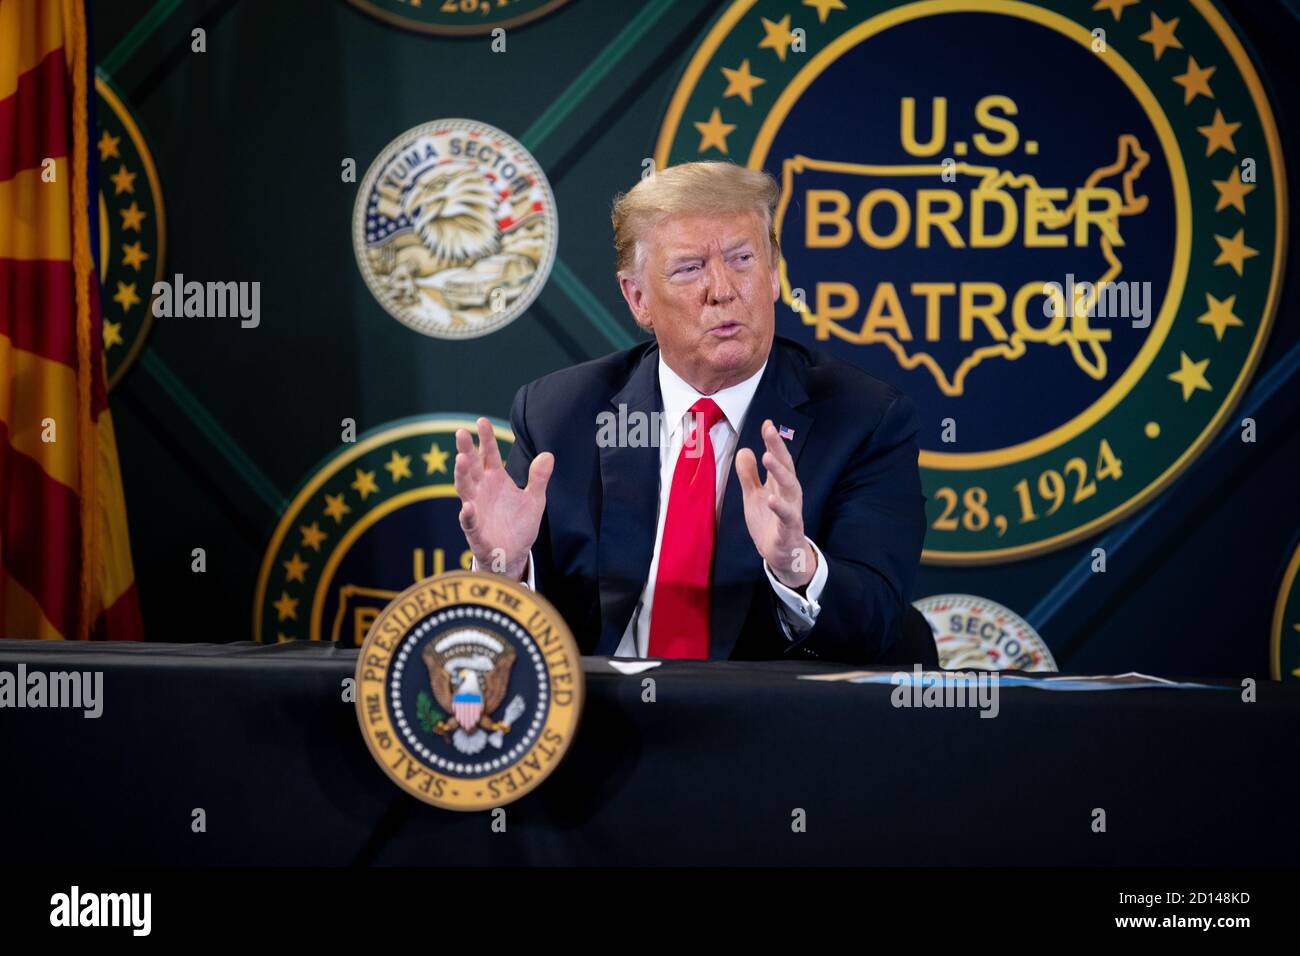 El presidente Donald Trump, junto con el Secretario interino Chad Wolf y el Comisionado interino Mark Morgan, visitaron el muro fronterizo en Yuma, Arizona, el 23 de junio de 2020. La visita marcó la finalización de 200 millas de nuevo muro fronterizo construido a lo largo de la frontera suroeste. Foto de stock